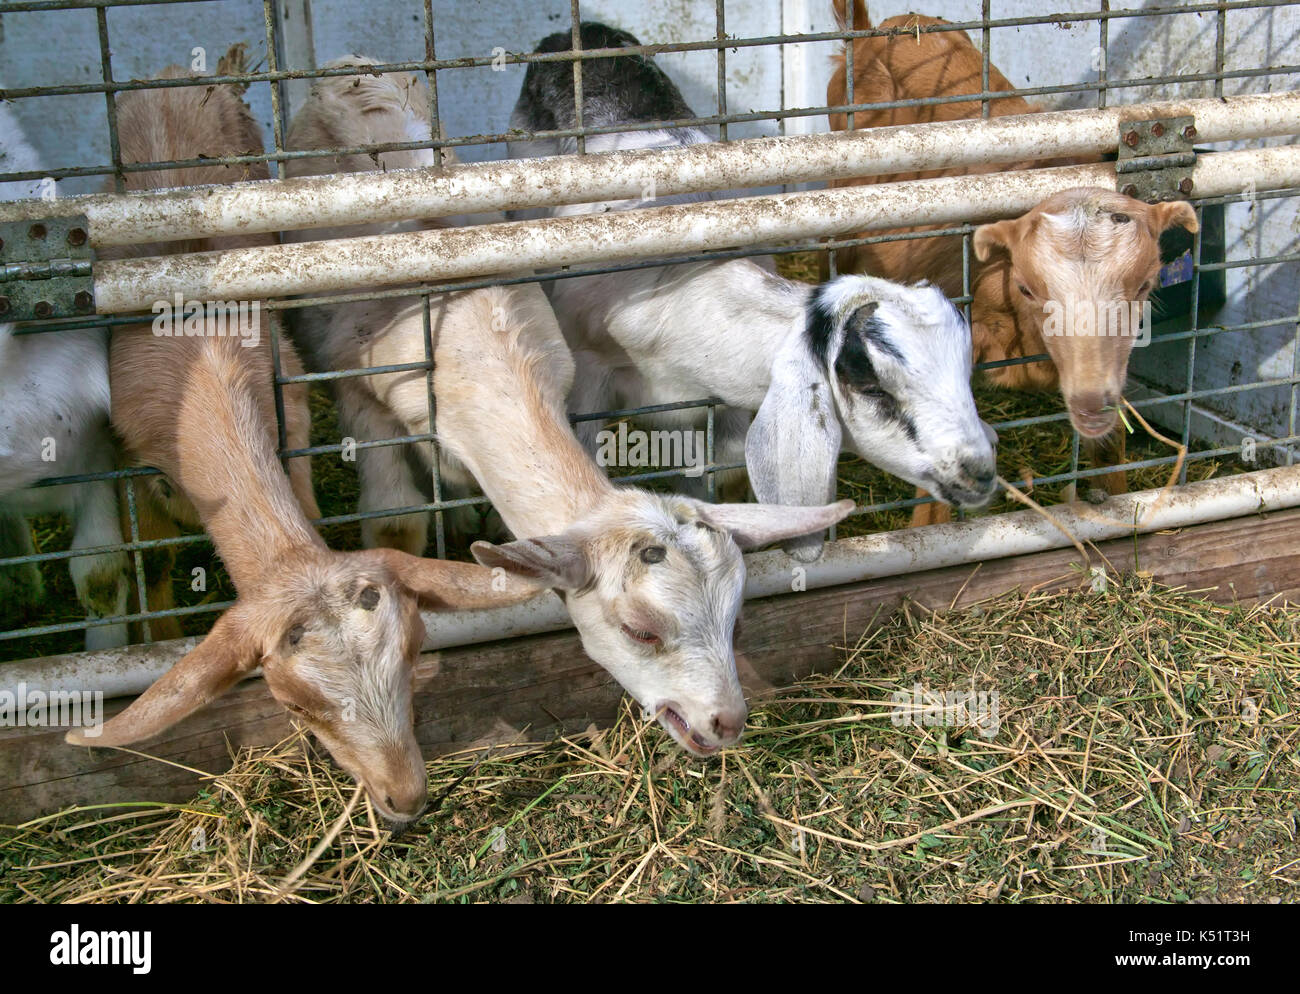 Les jeunes enfants, les chèvres se nourrissent de la luzerne, races mixtes, ferme de chèvres laitières. Banque D'Images